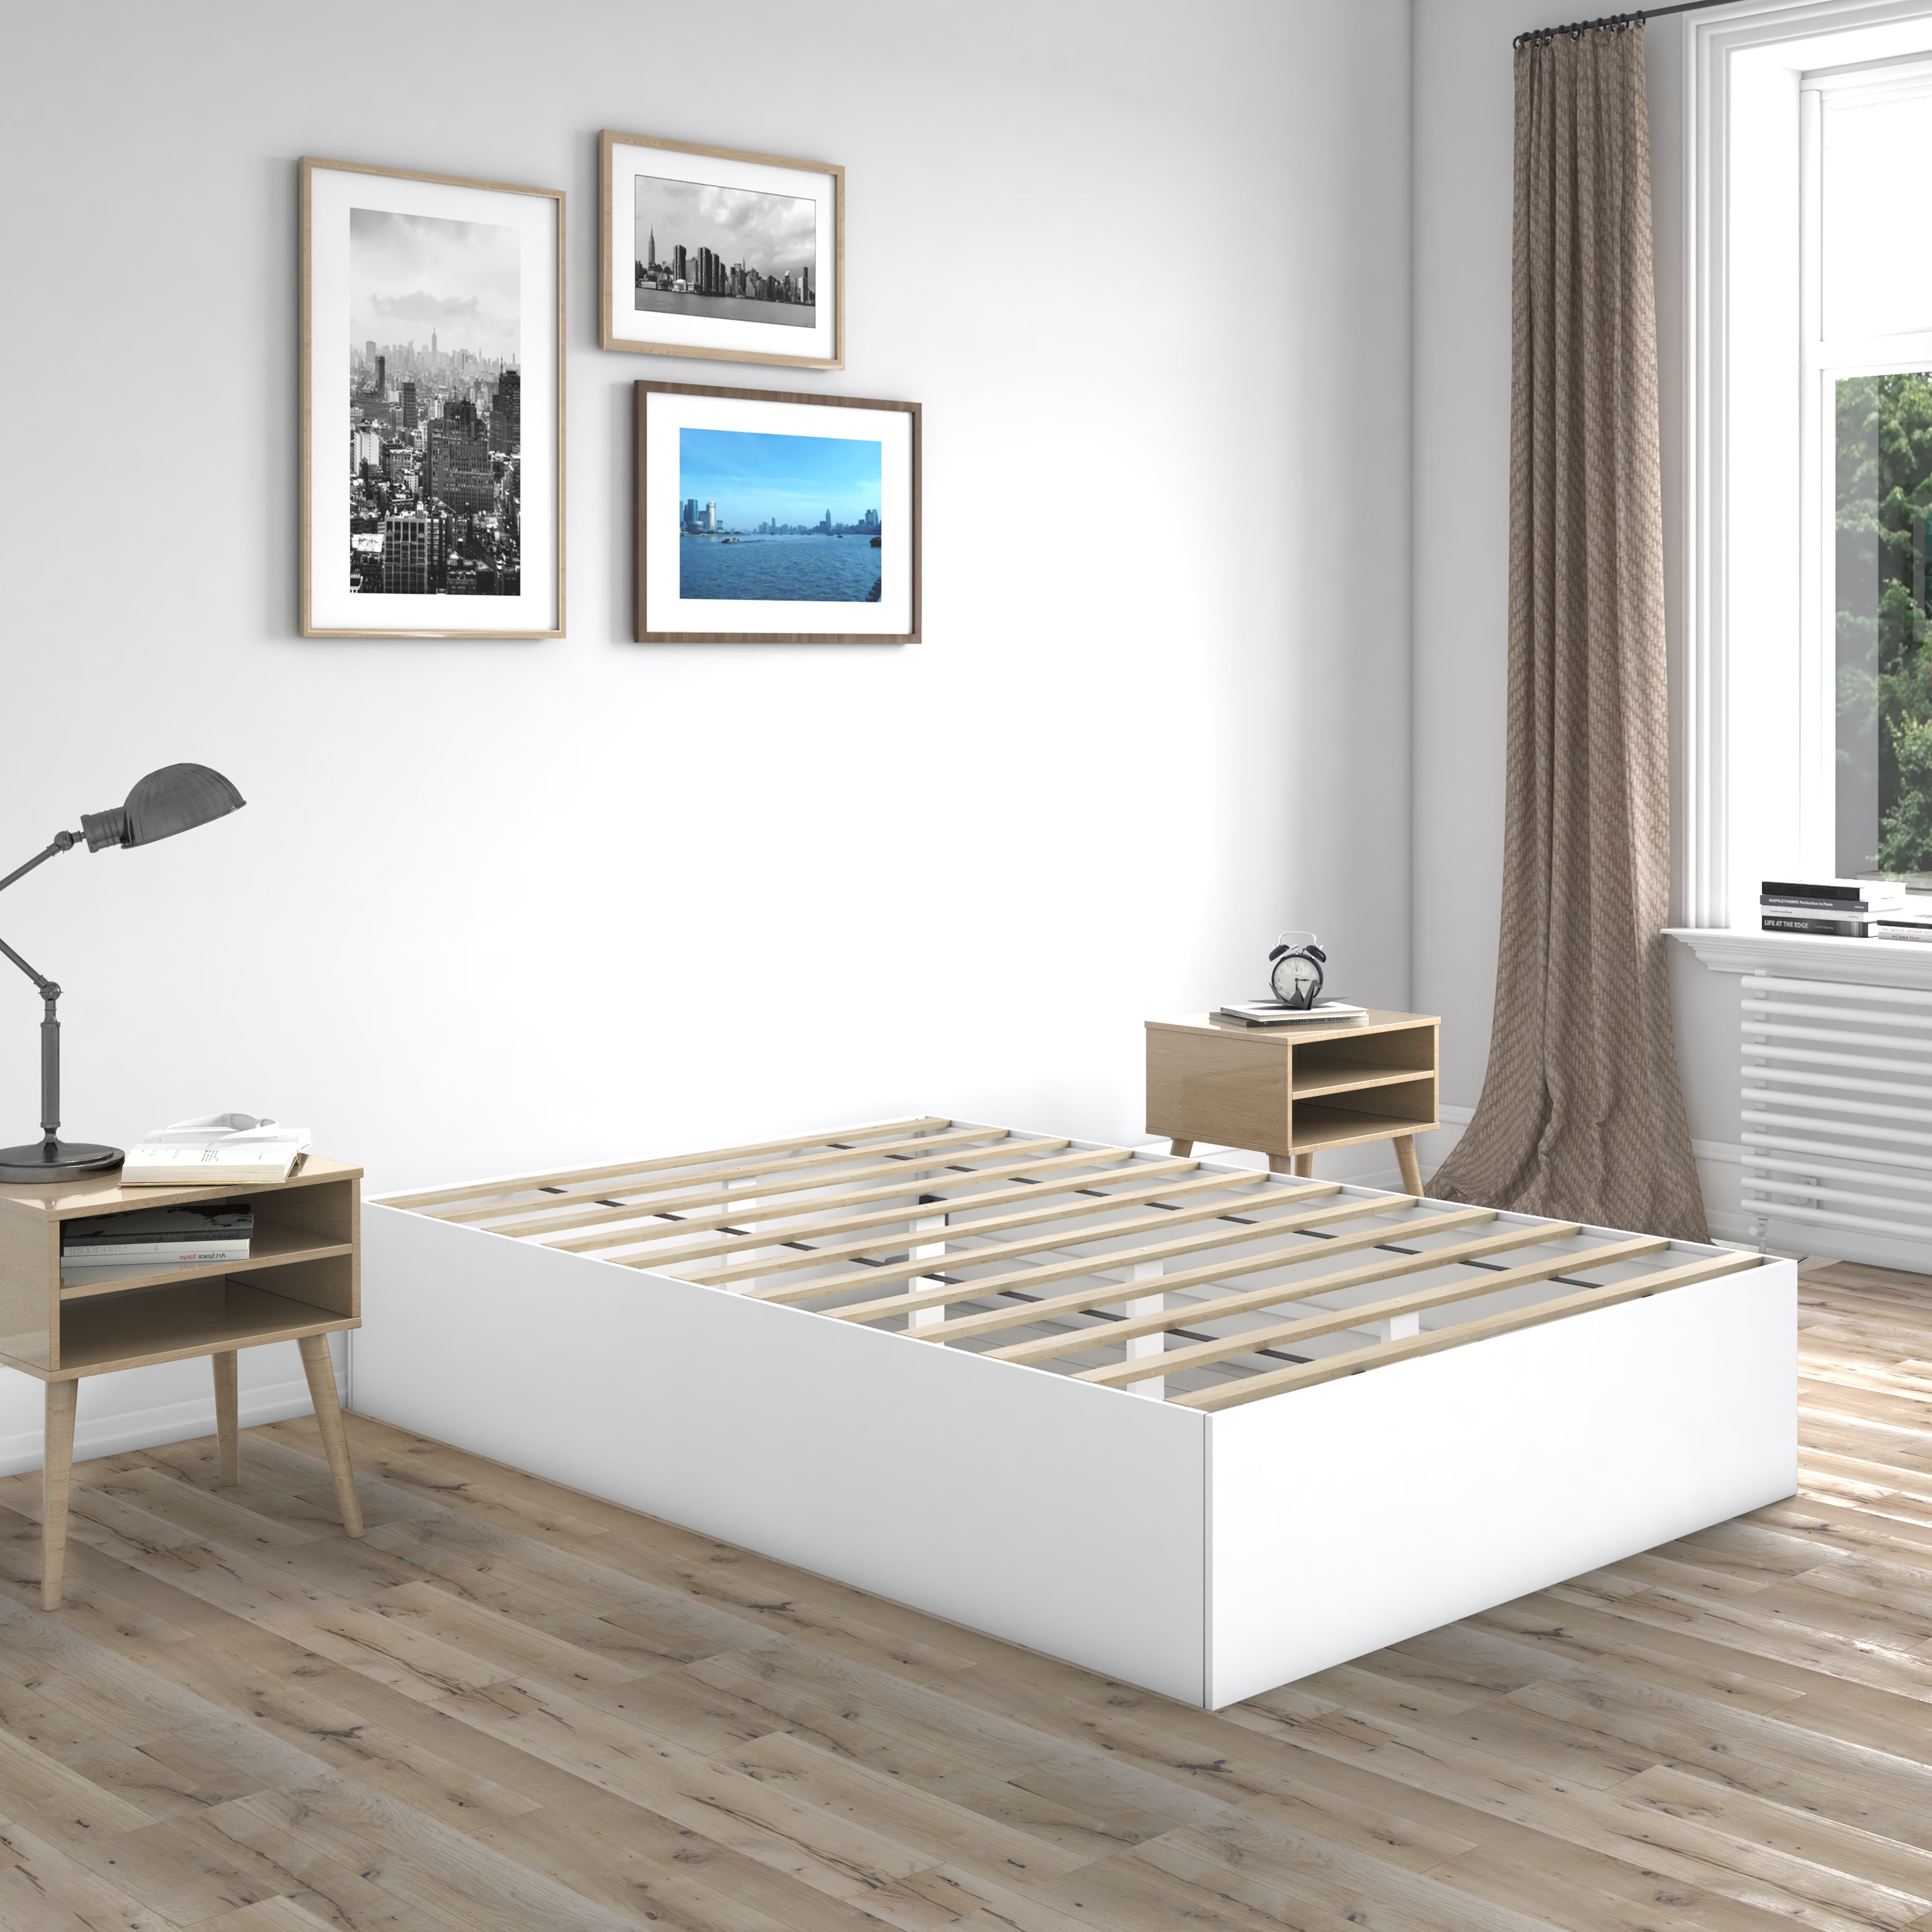 Premier Beckett Modern Platform Bed, Simple Modern King Bed Frame